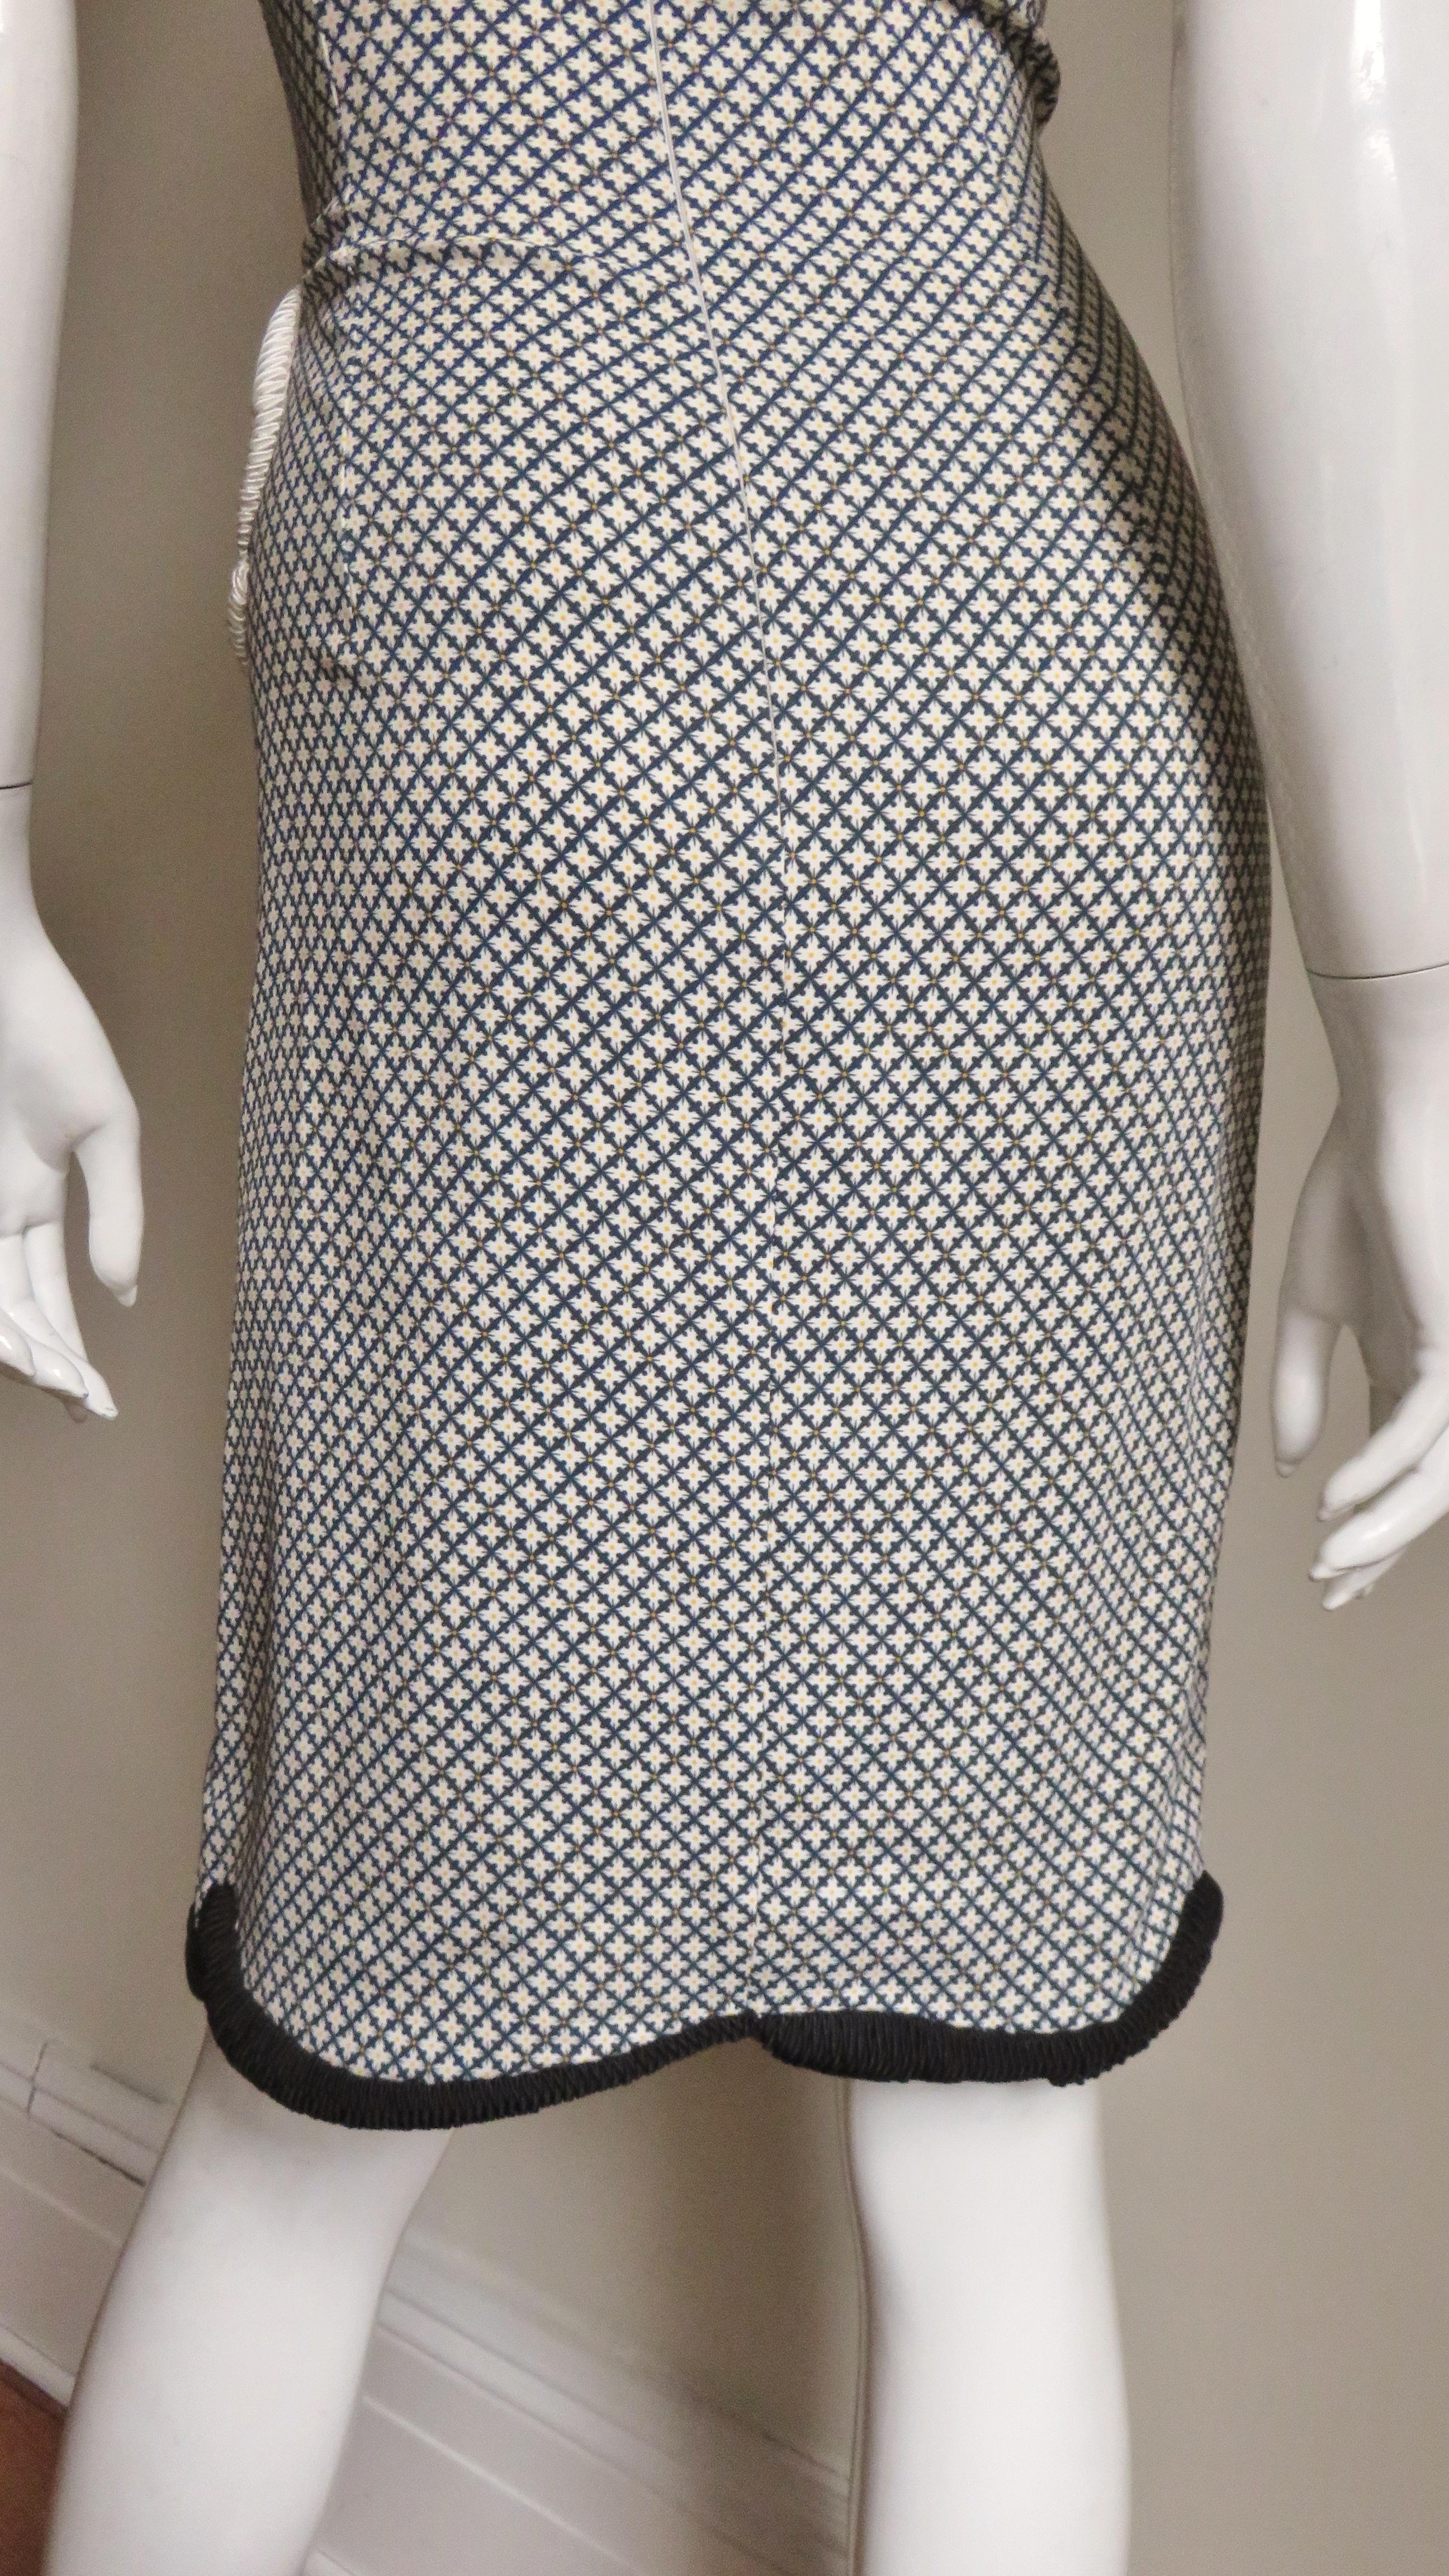 Stella McCartney Neues Kleid mit gemischten Mustern für die Anzeigenkampagne 10